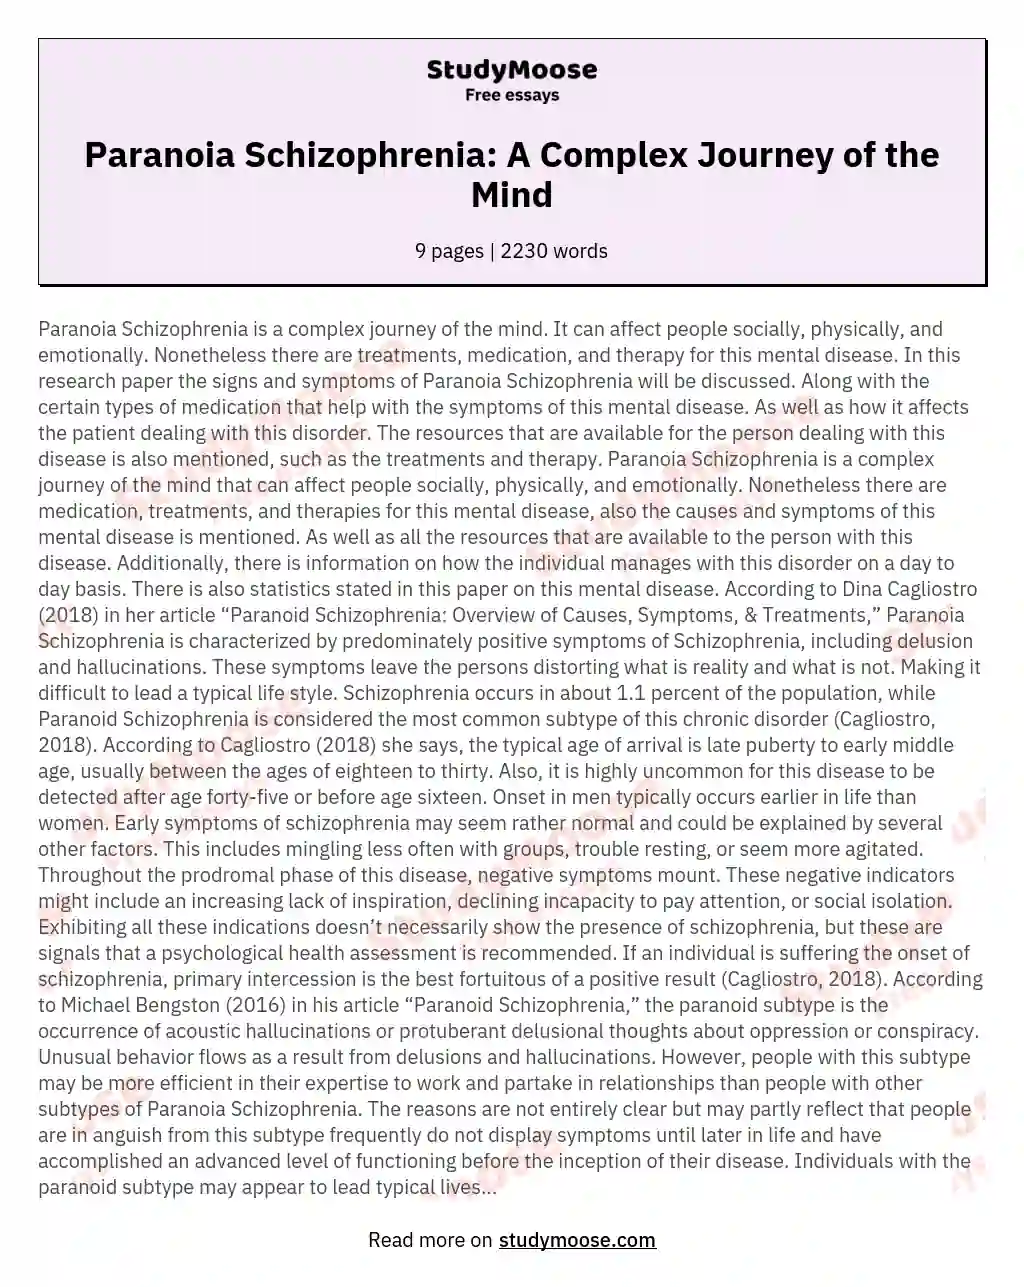 Paranoia Schizophrenia: A Complex Journey of the Mind essay